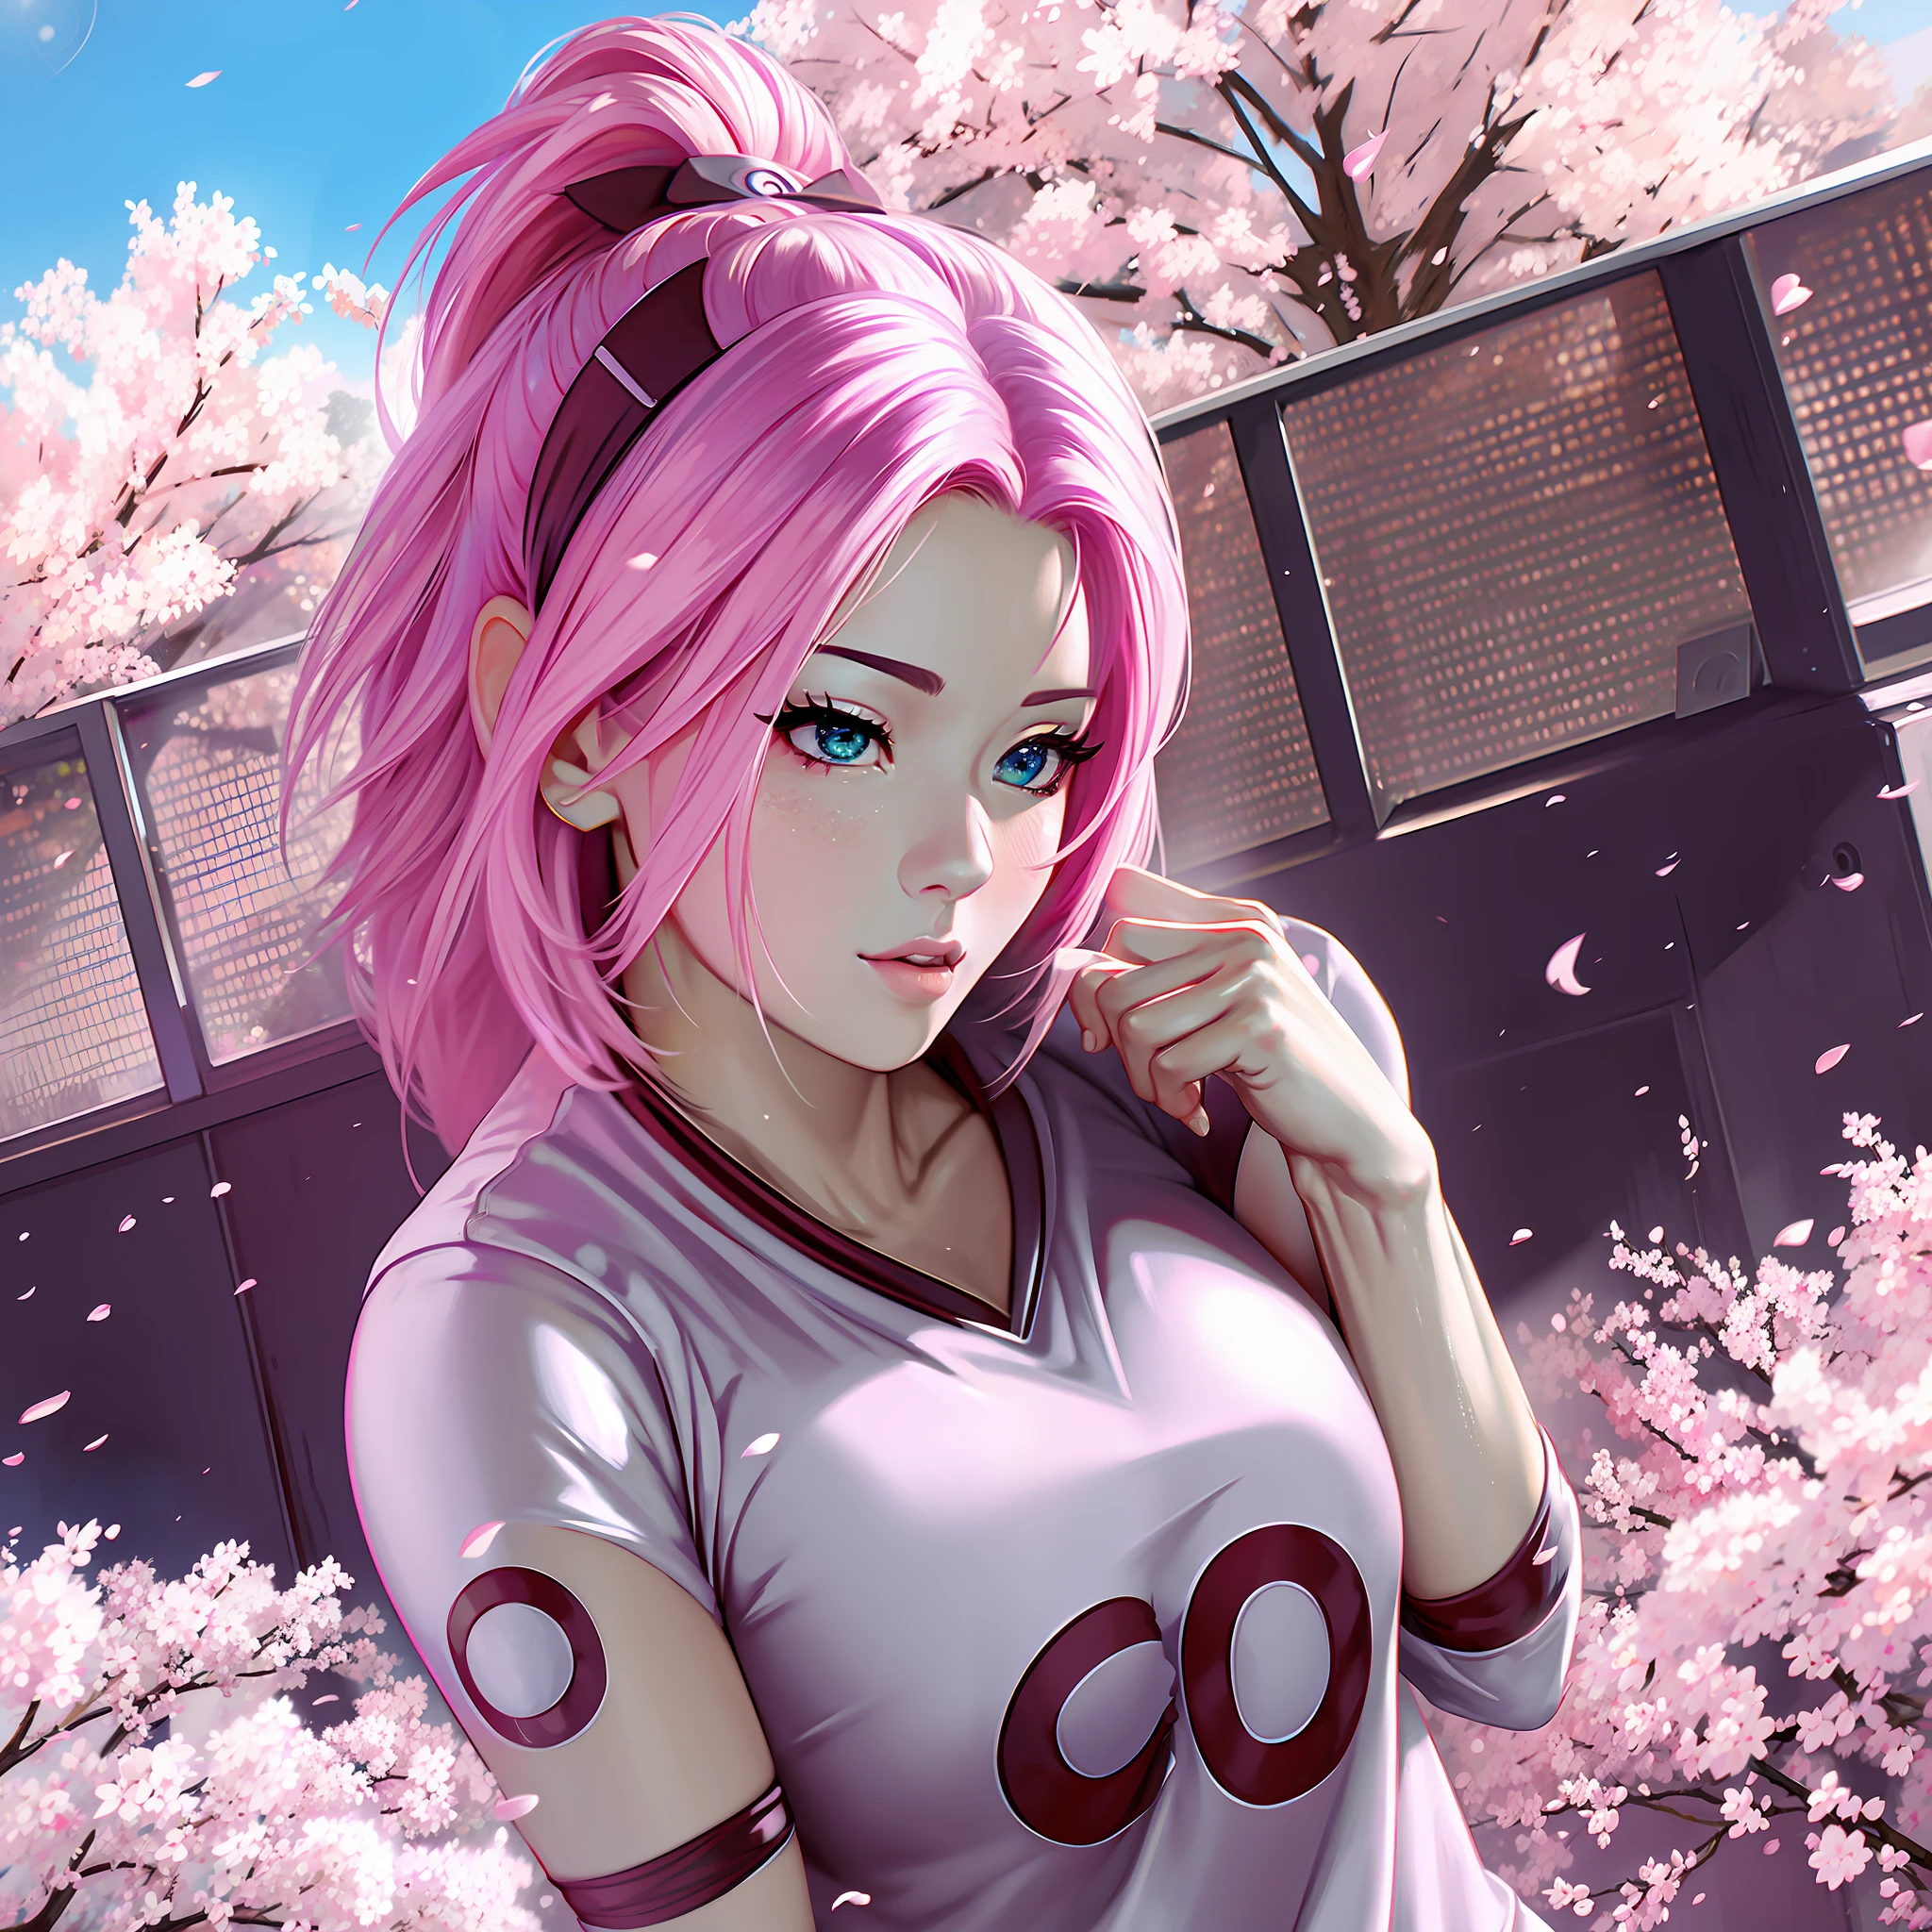 Sakura mit der Fußballtrikot-Pose sexy Anime super realistisch und gut detailliert